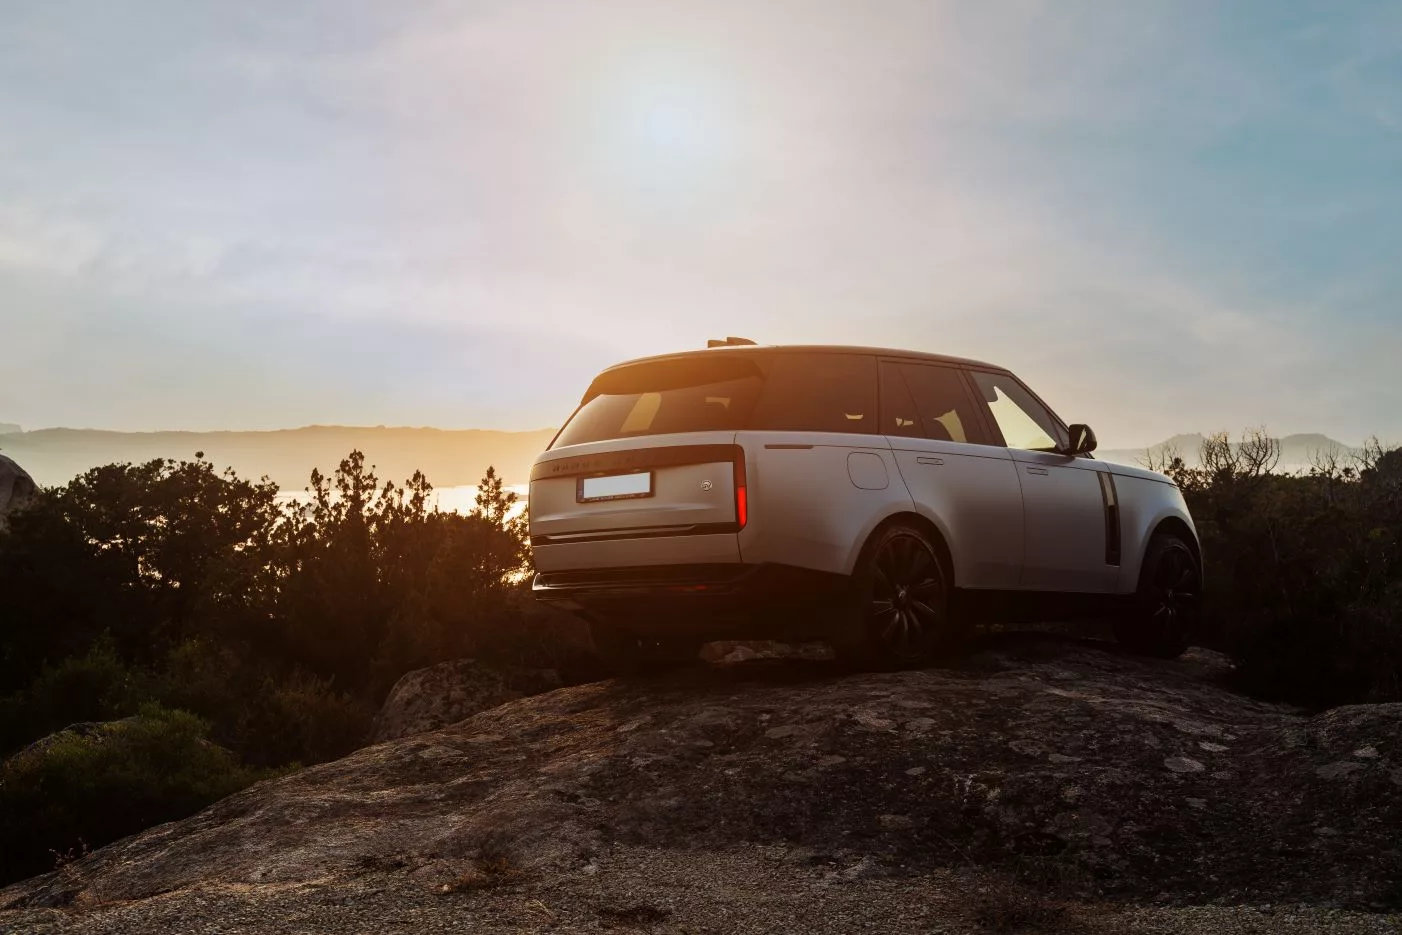 Range Rover experience Sardegna